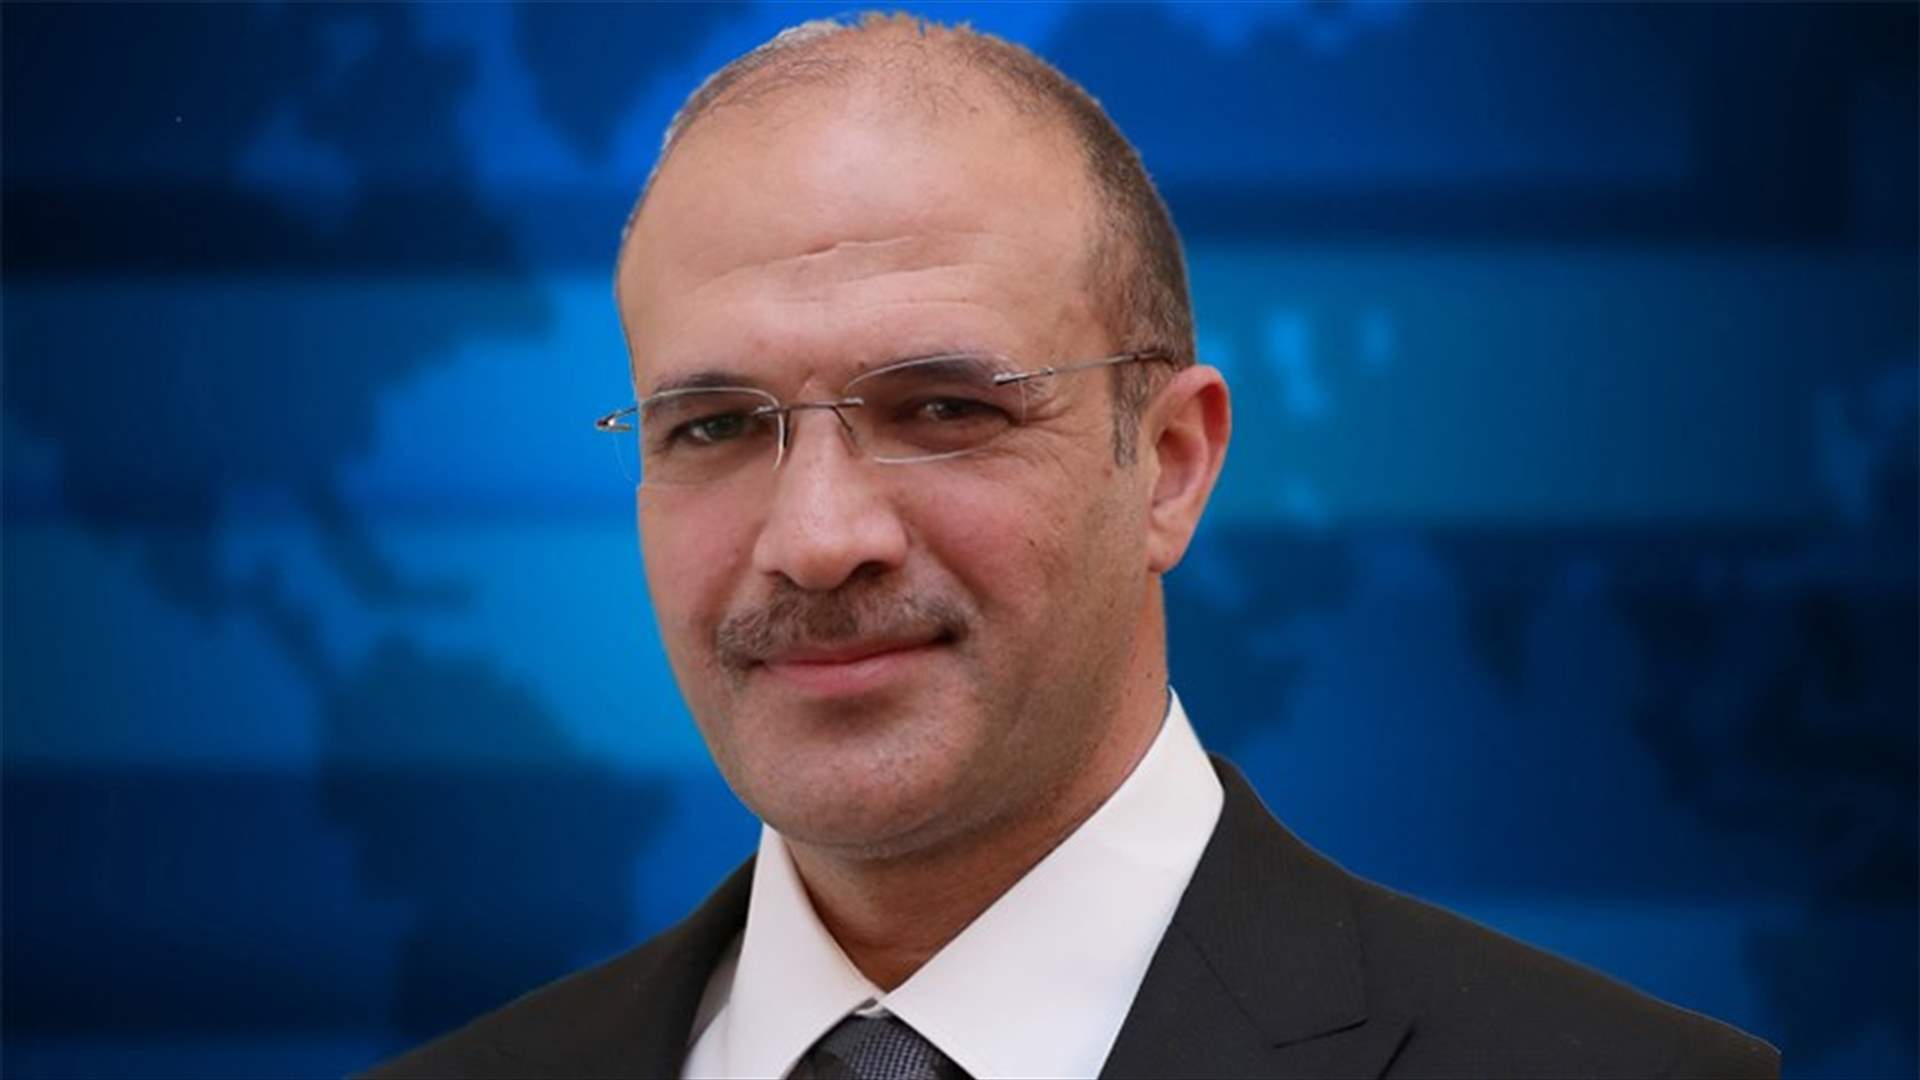 وزير الصحة التقى السفير الروسي الجديد ووفداً من تكتل لبنان القوي... اليكم التفاصيل